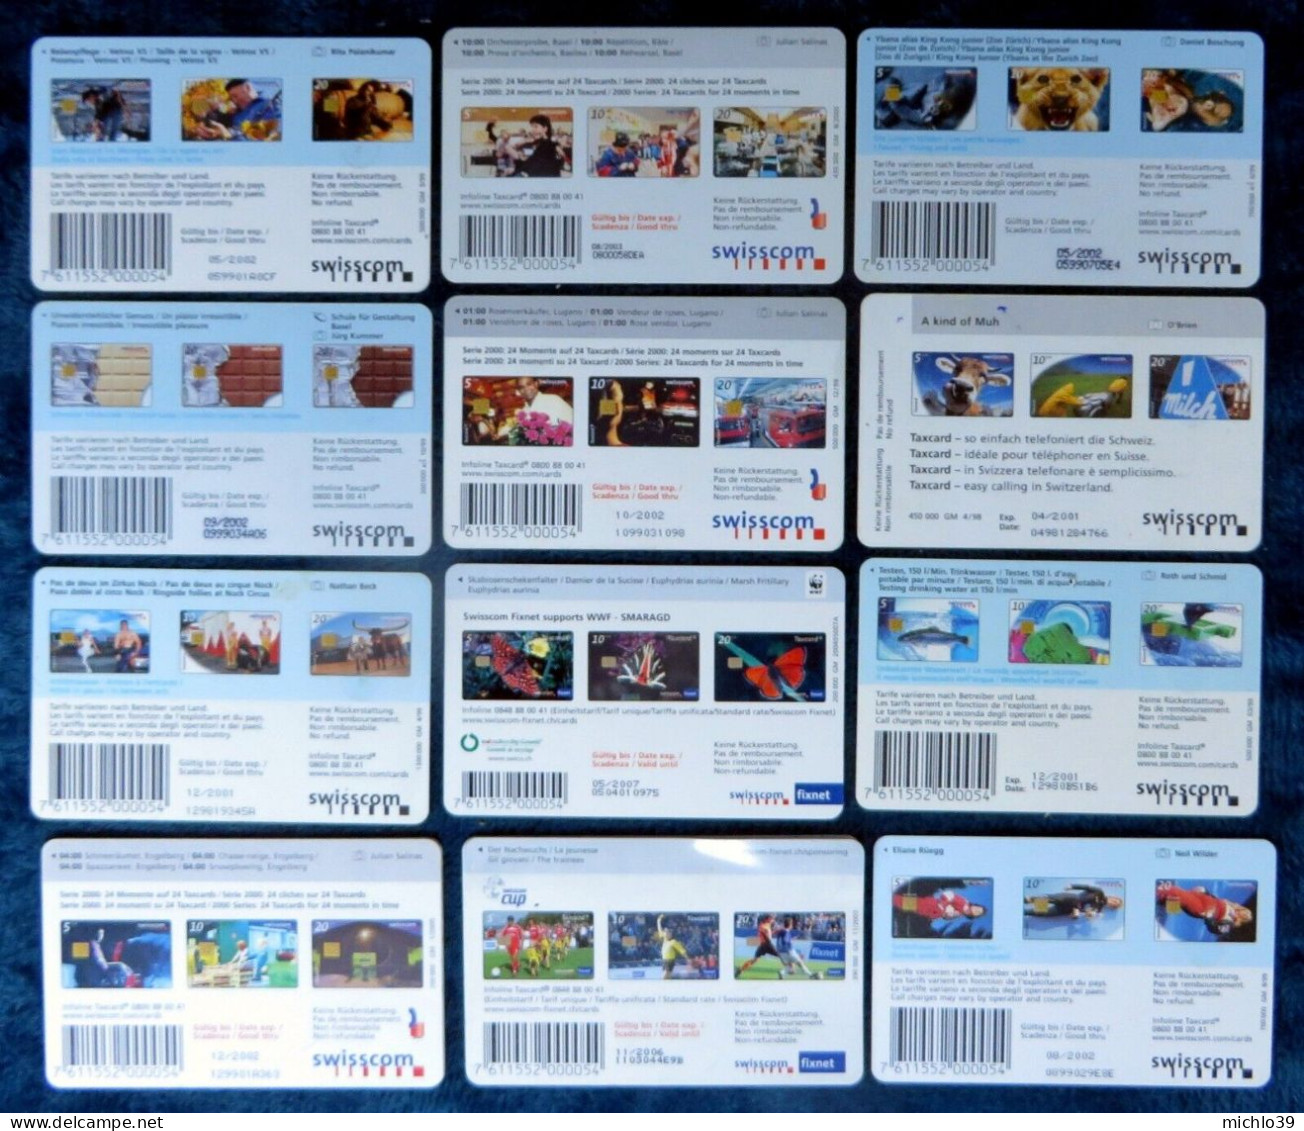 Lot de 79 télécartes de Suisse (voir mes scans svp) Taxcard 10, 15, 20 etc